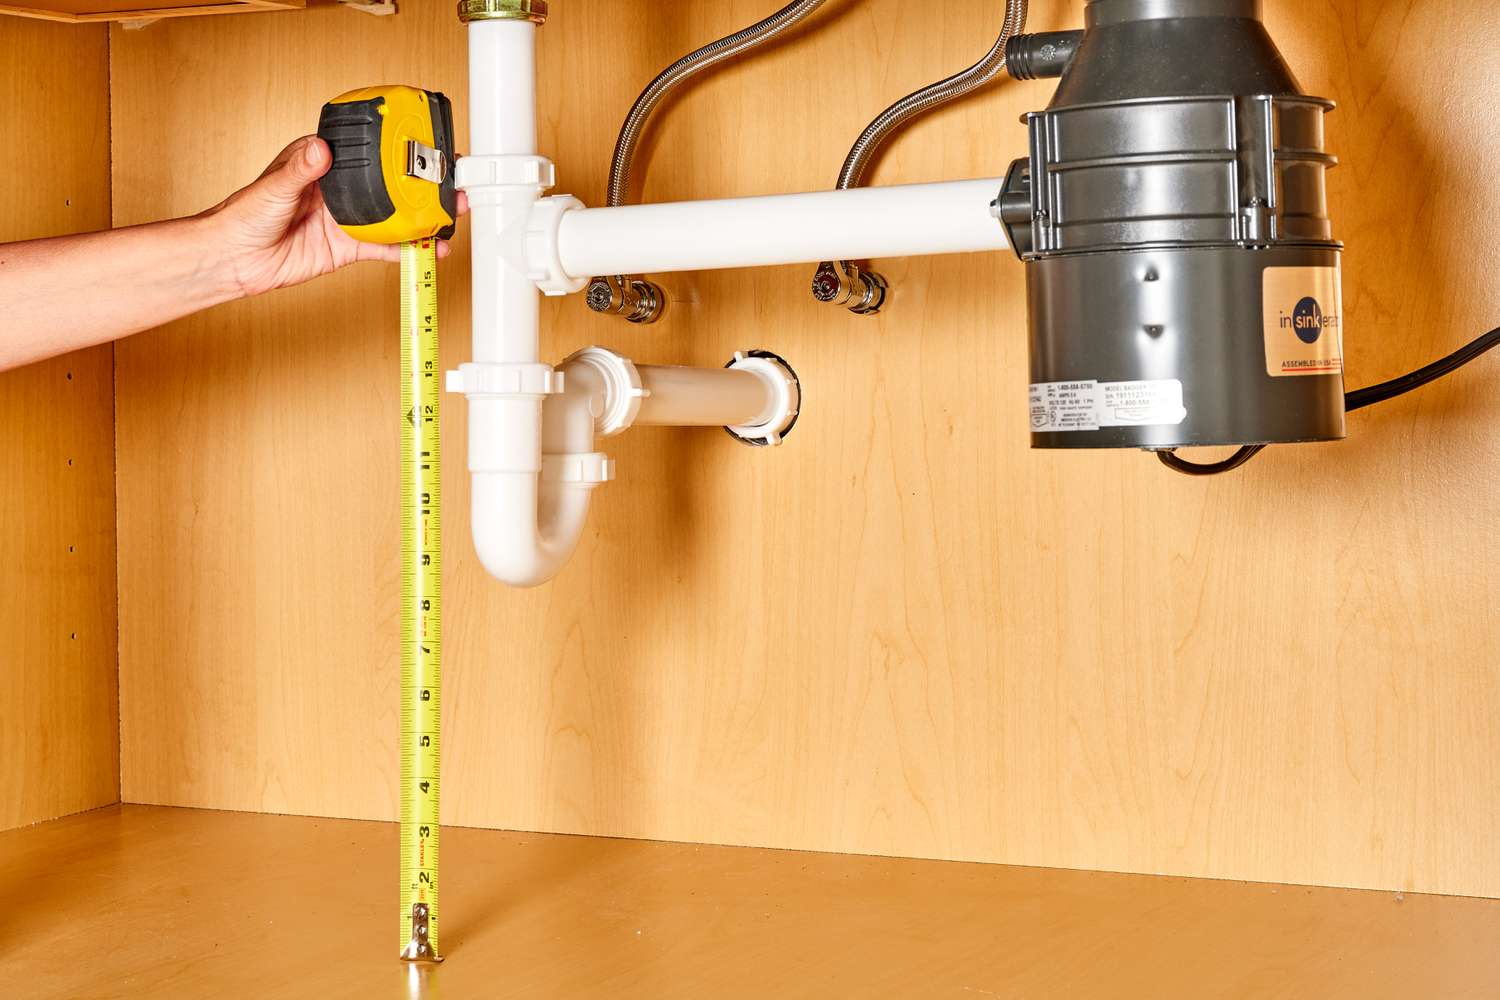 Fita métrica amarela calculando medidas sob o encanamento da pia da cozinha